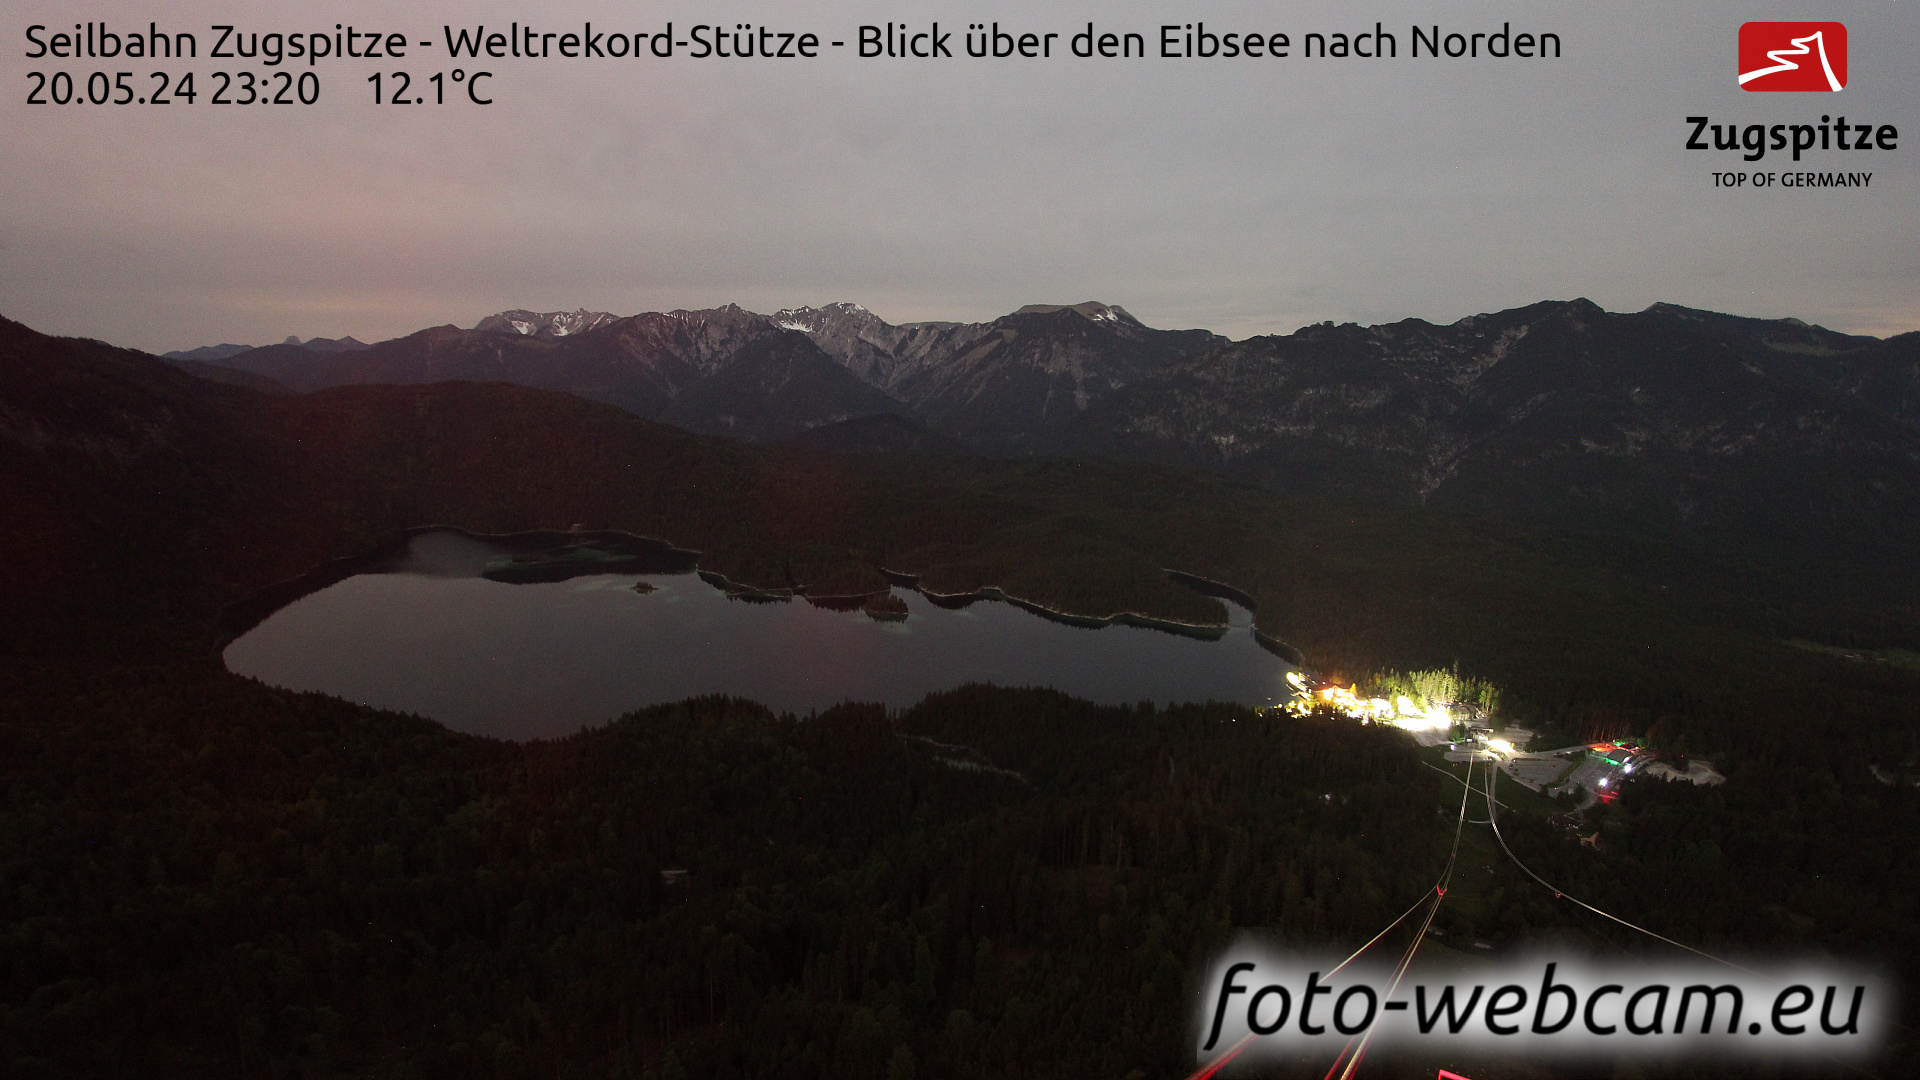 Zugspitze So. 23:49